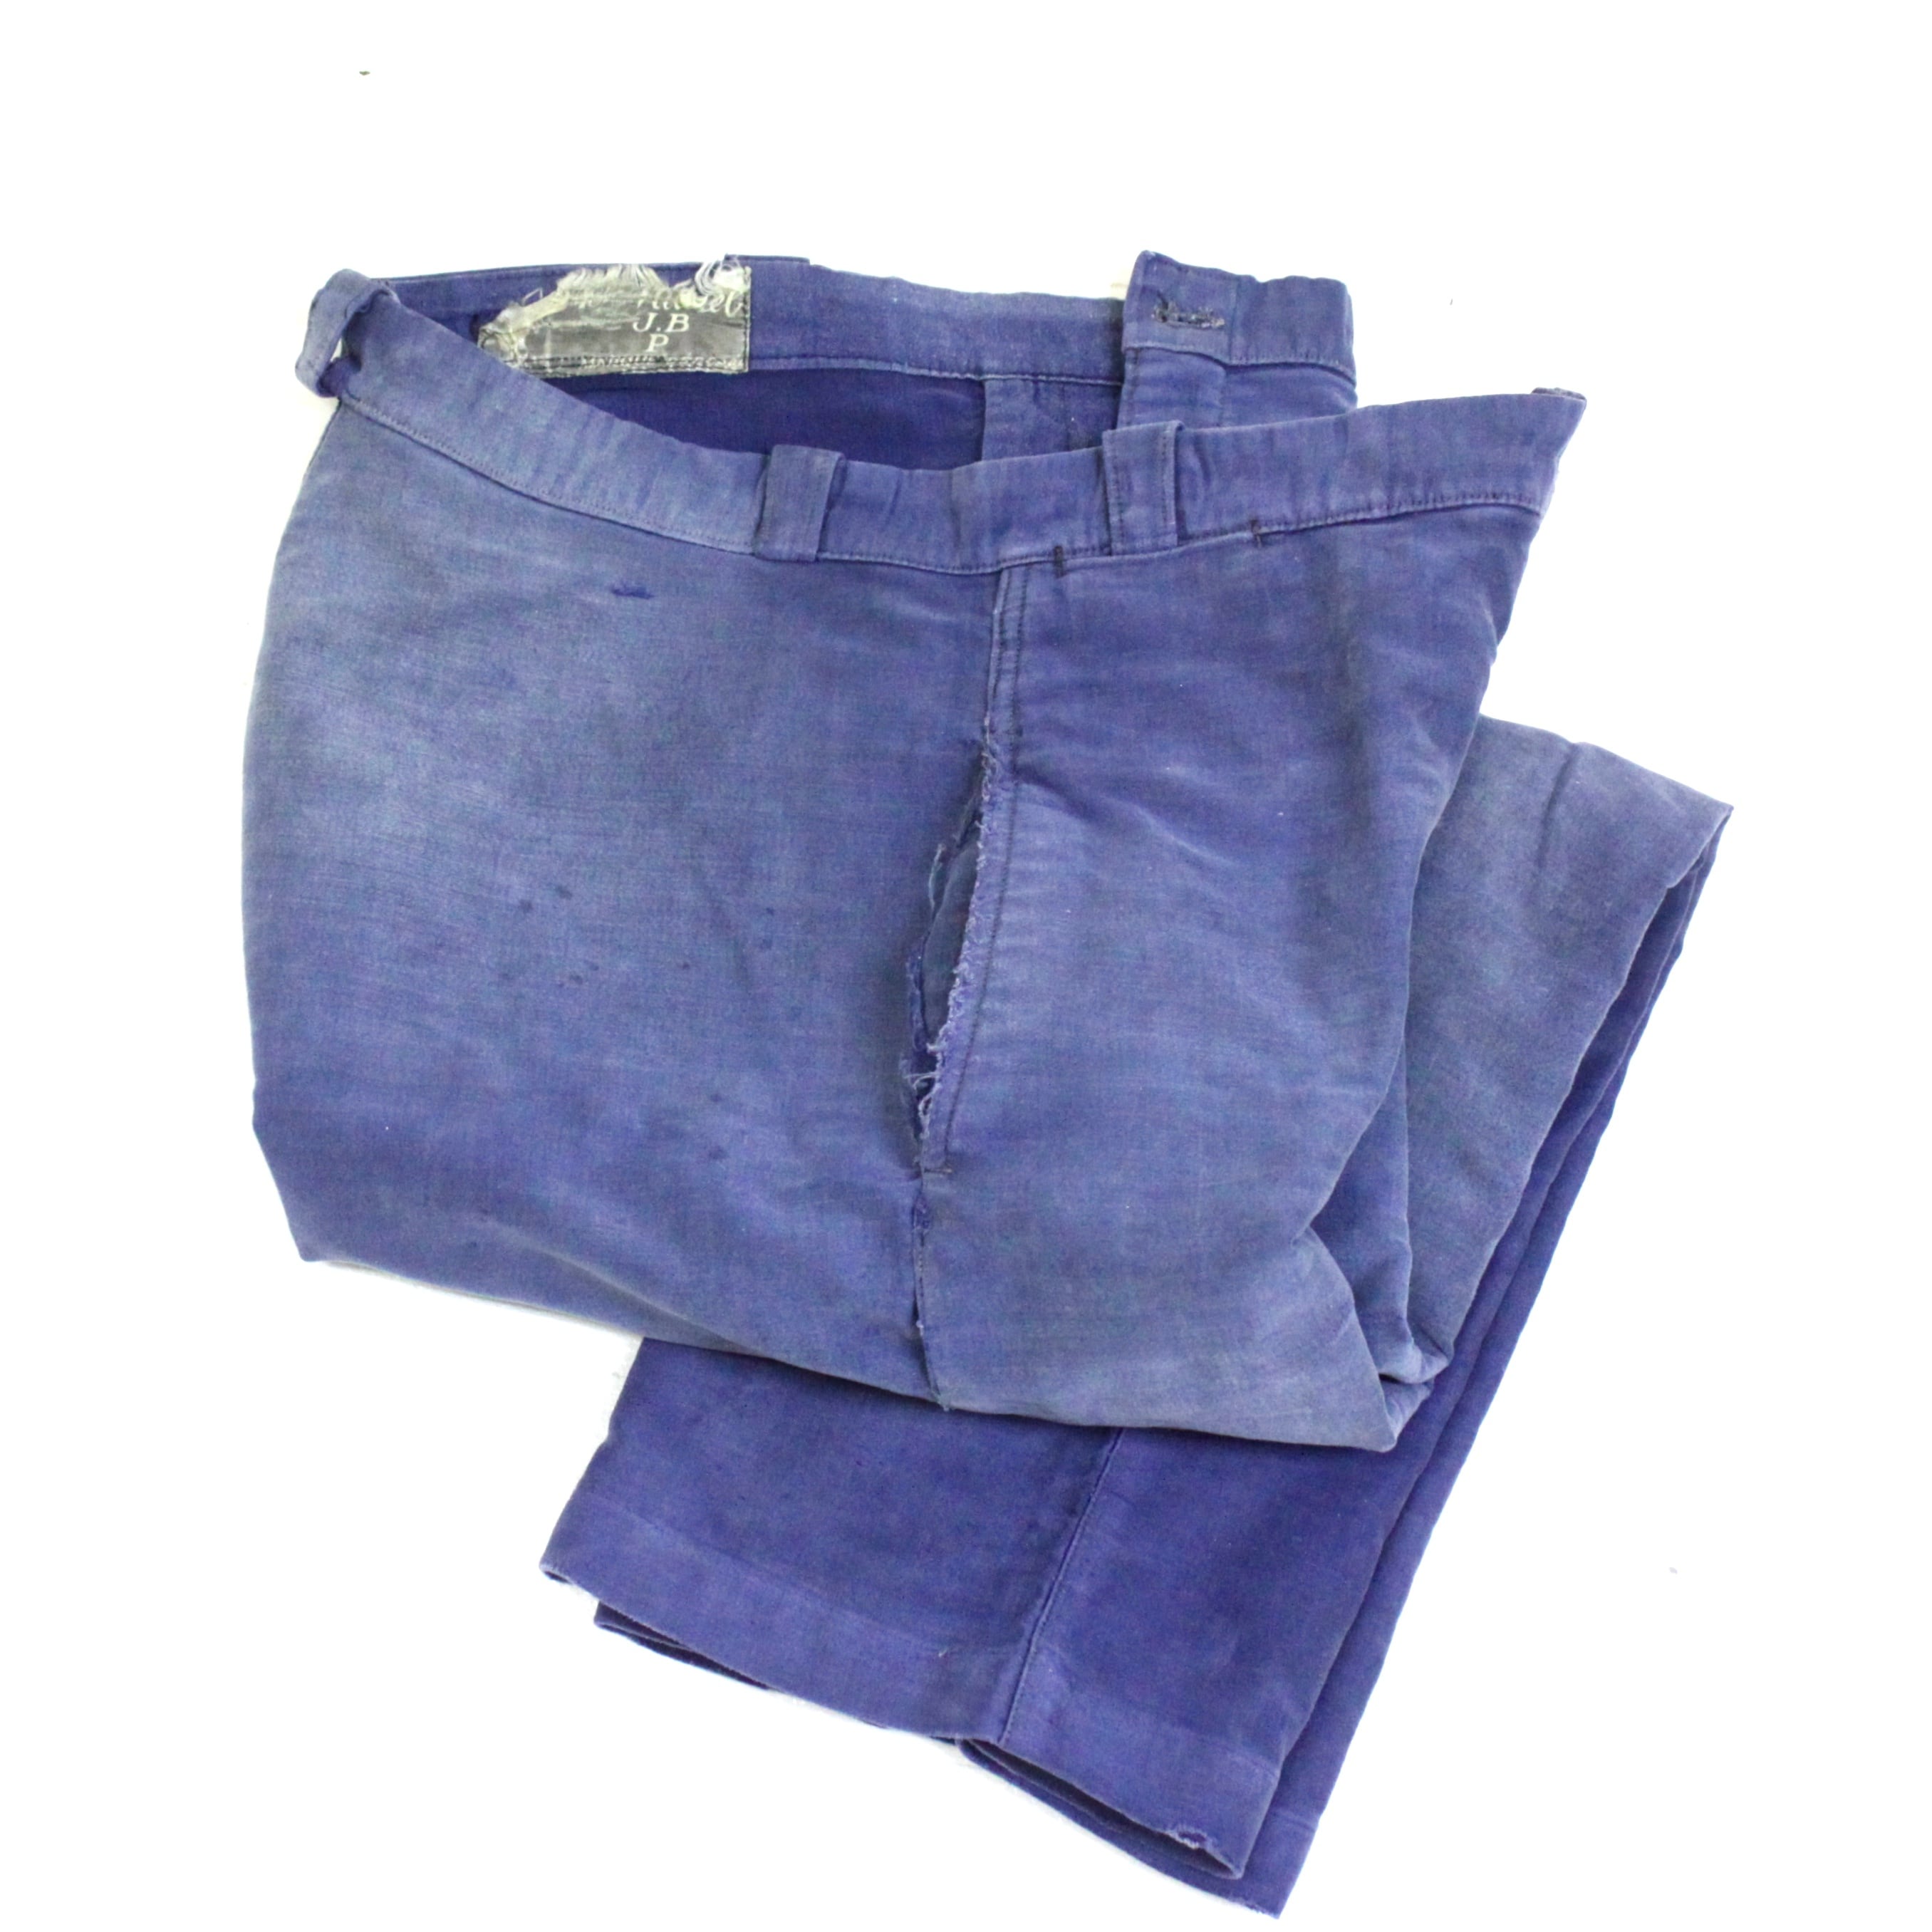 1950's French moleskin trousers インクブルー フレンチワーク コットンモールスキン ワークパンツ 50s 50年代 euro  vintage A St Michel ユーロワーク 古着 1494 | web_pee